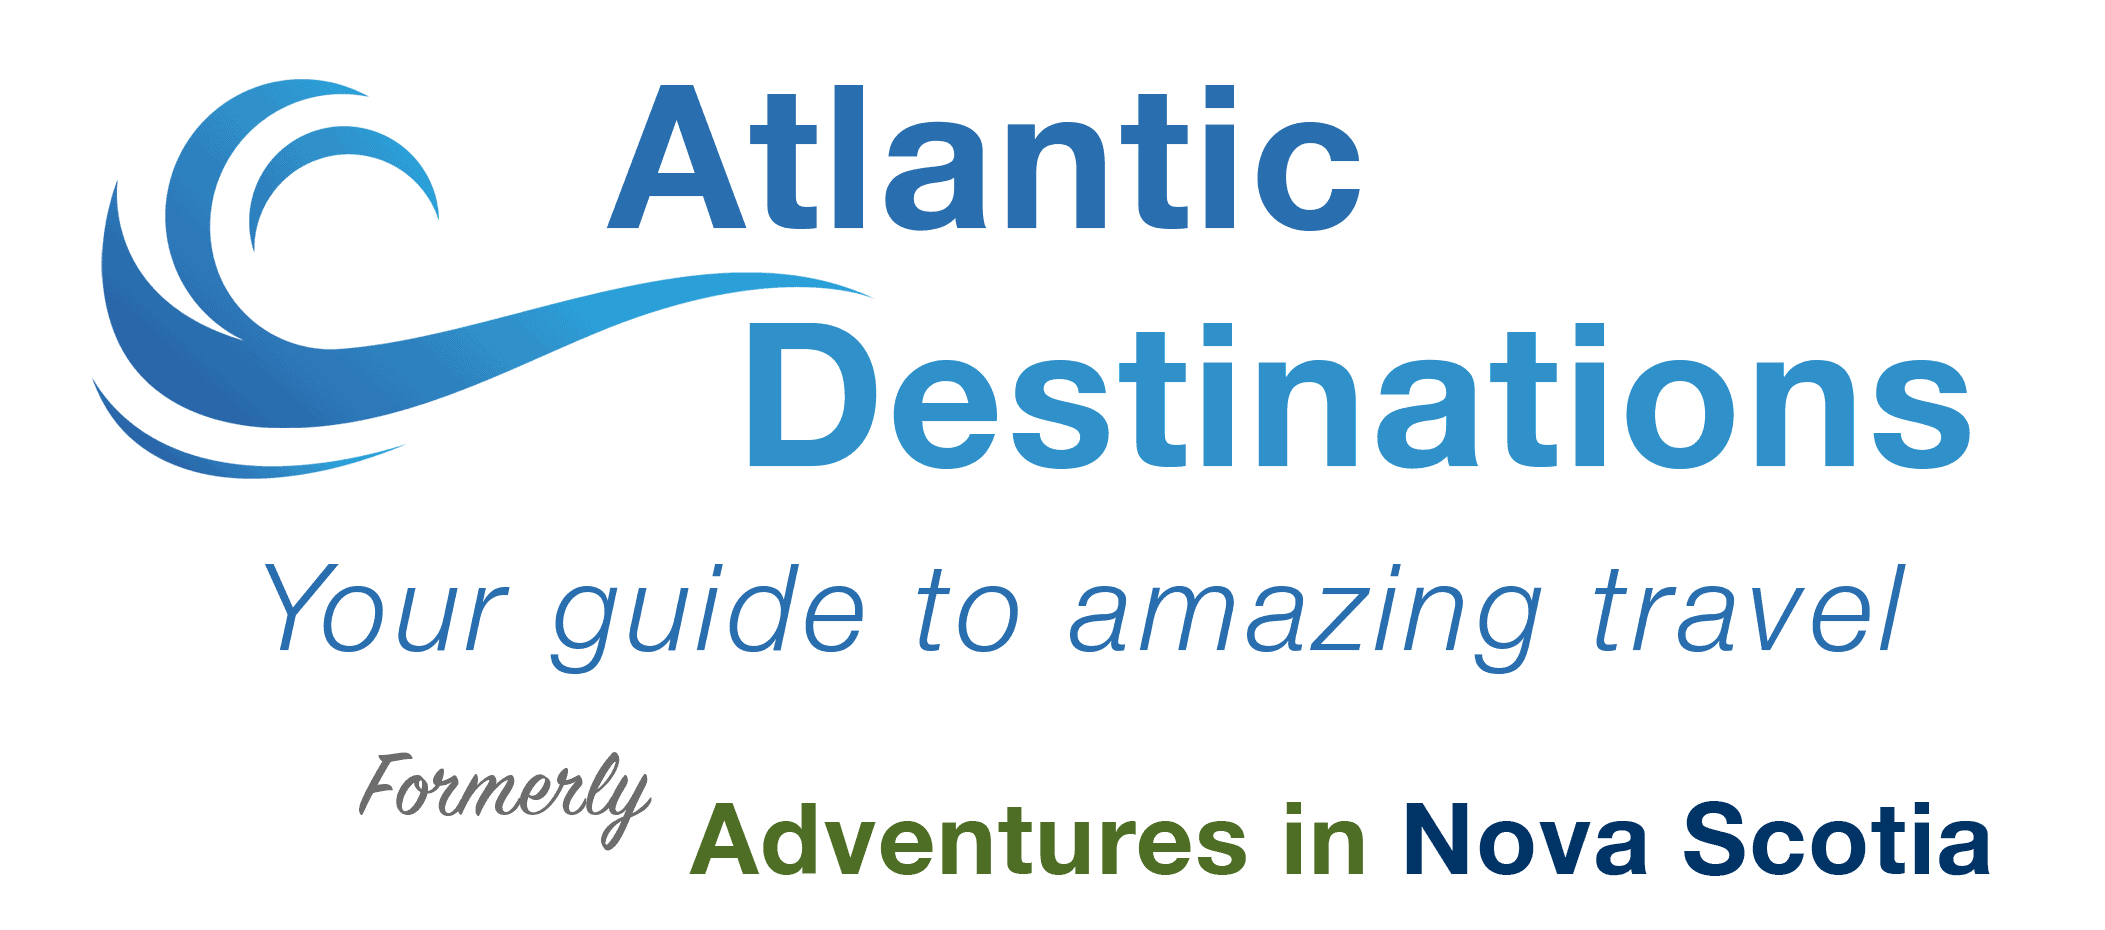 Atlantic Destinations